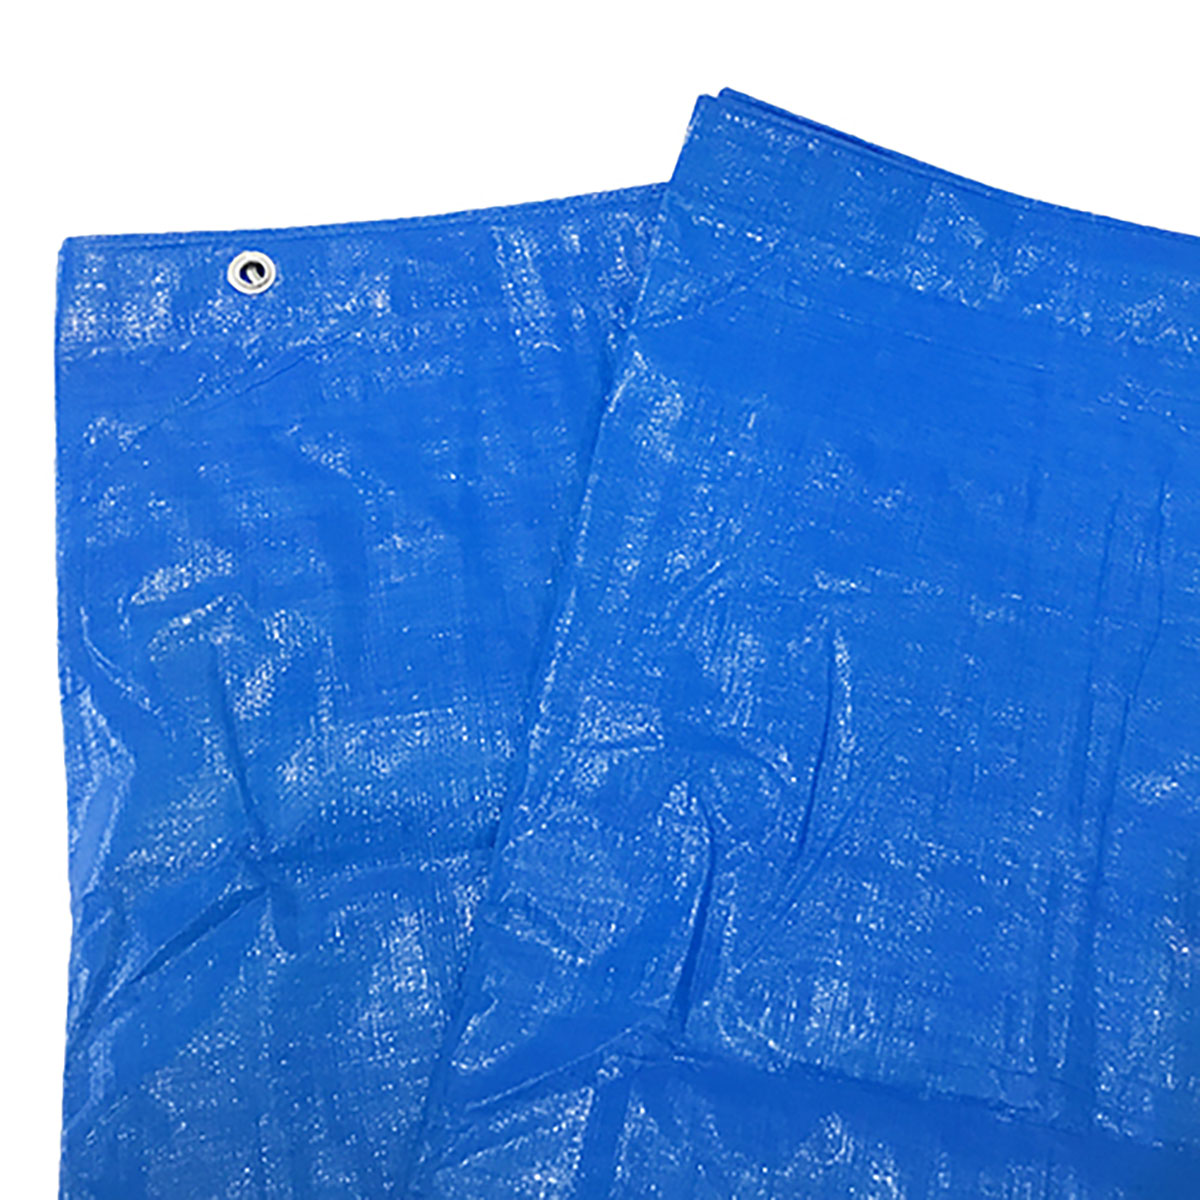 ブルーシート 巾約2.5×長さ約3.4m #3000